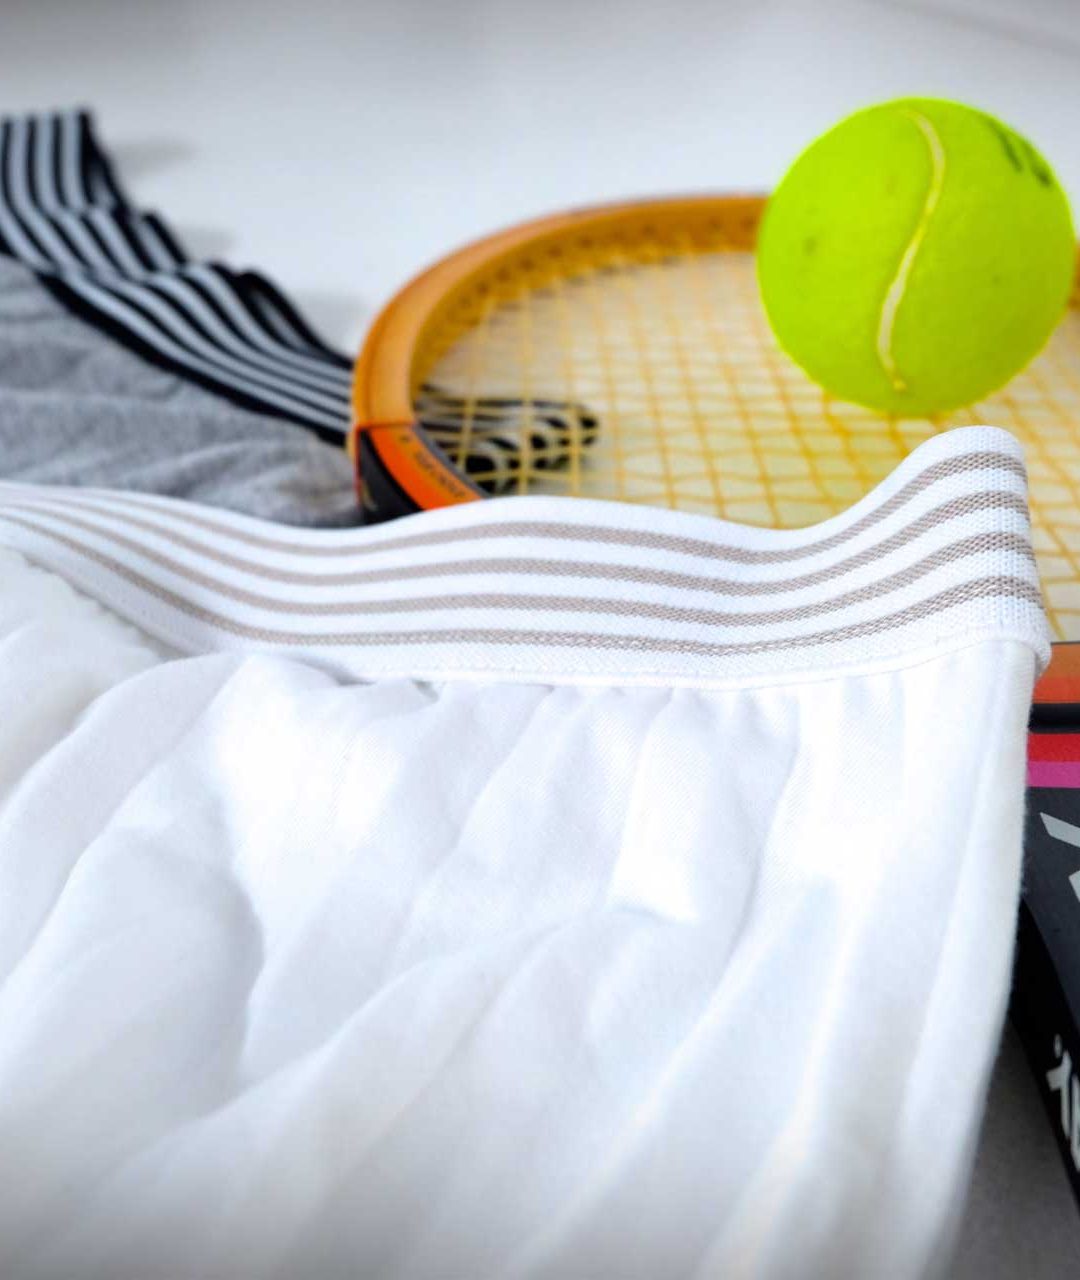 sportswear #1: tennis revival